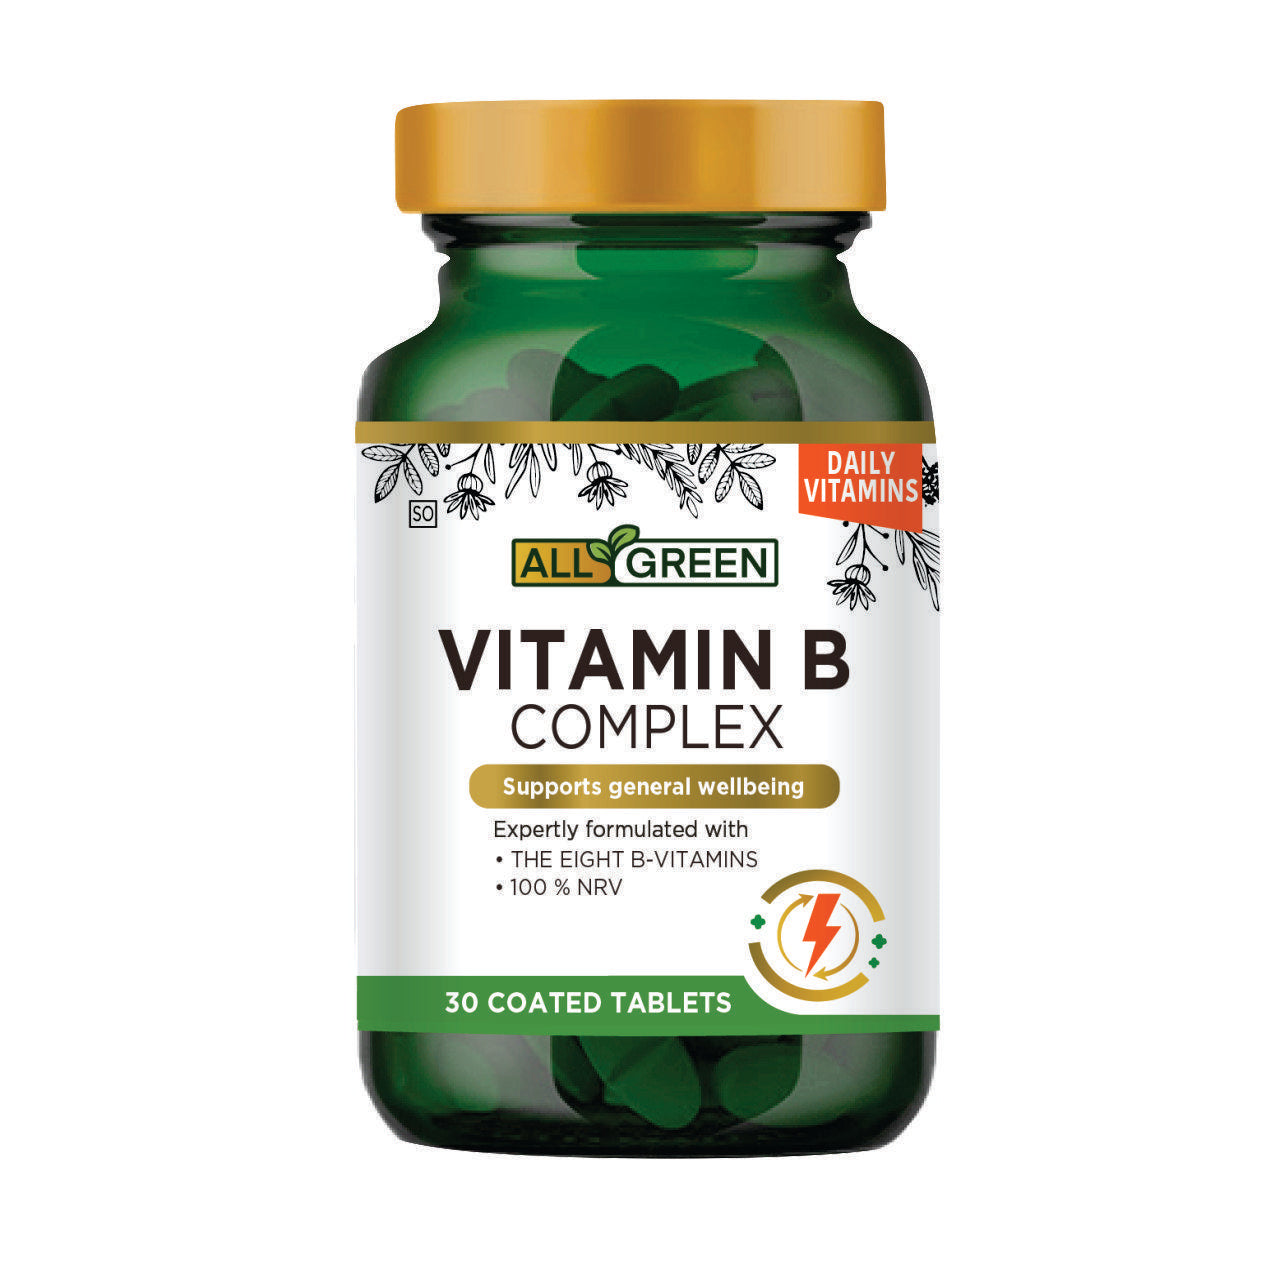 All Green - Vitamin B Complex 30